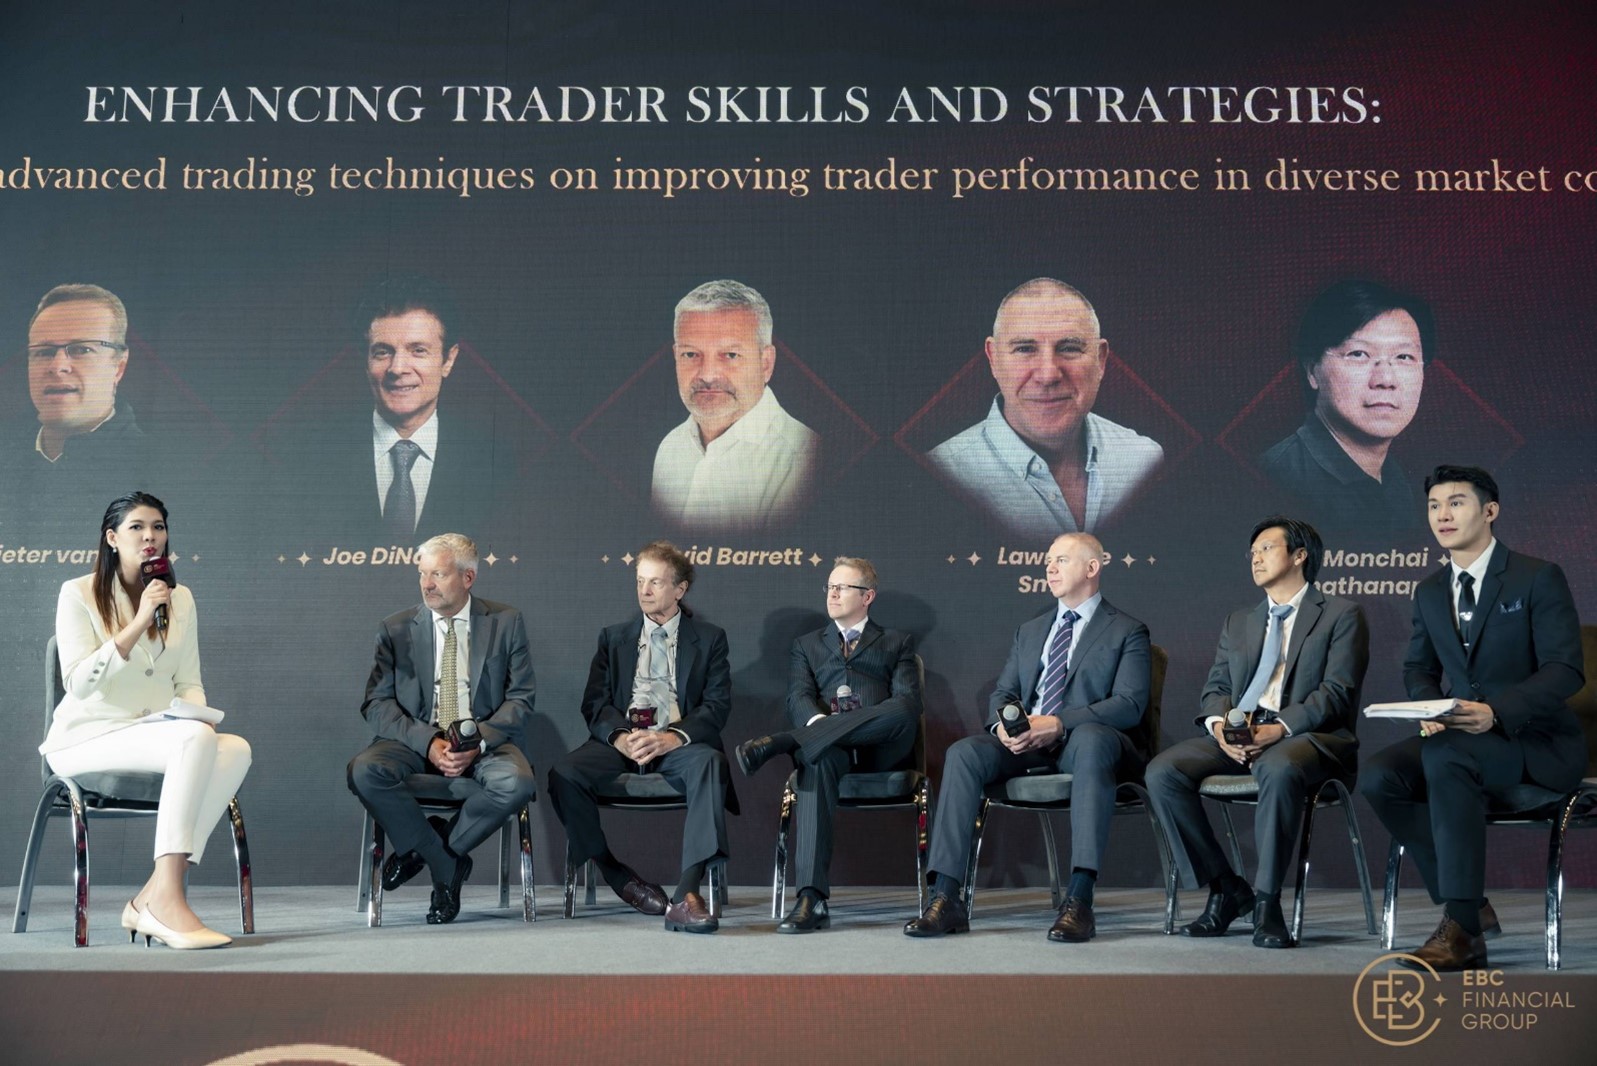 Diskusi interaktif bersama panelis terkemuka yang melibatkan berbagai khalayak untuk membahas teknik perdagangan profesional dan perilaku pasar.